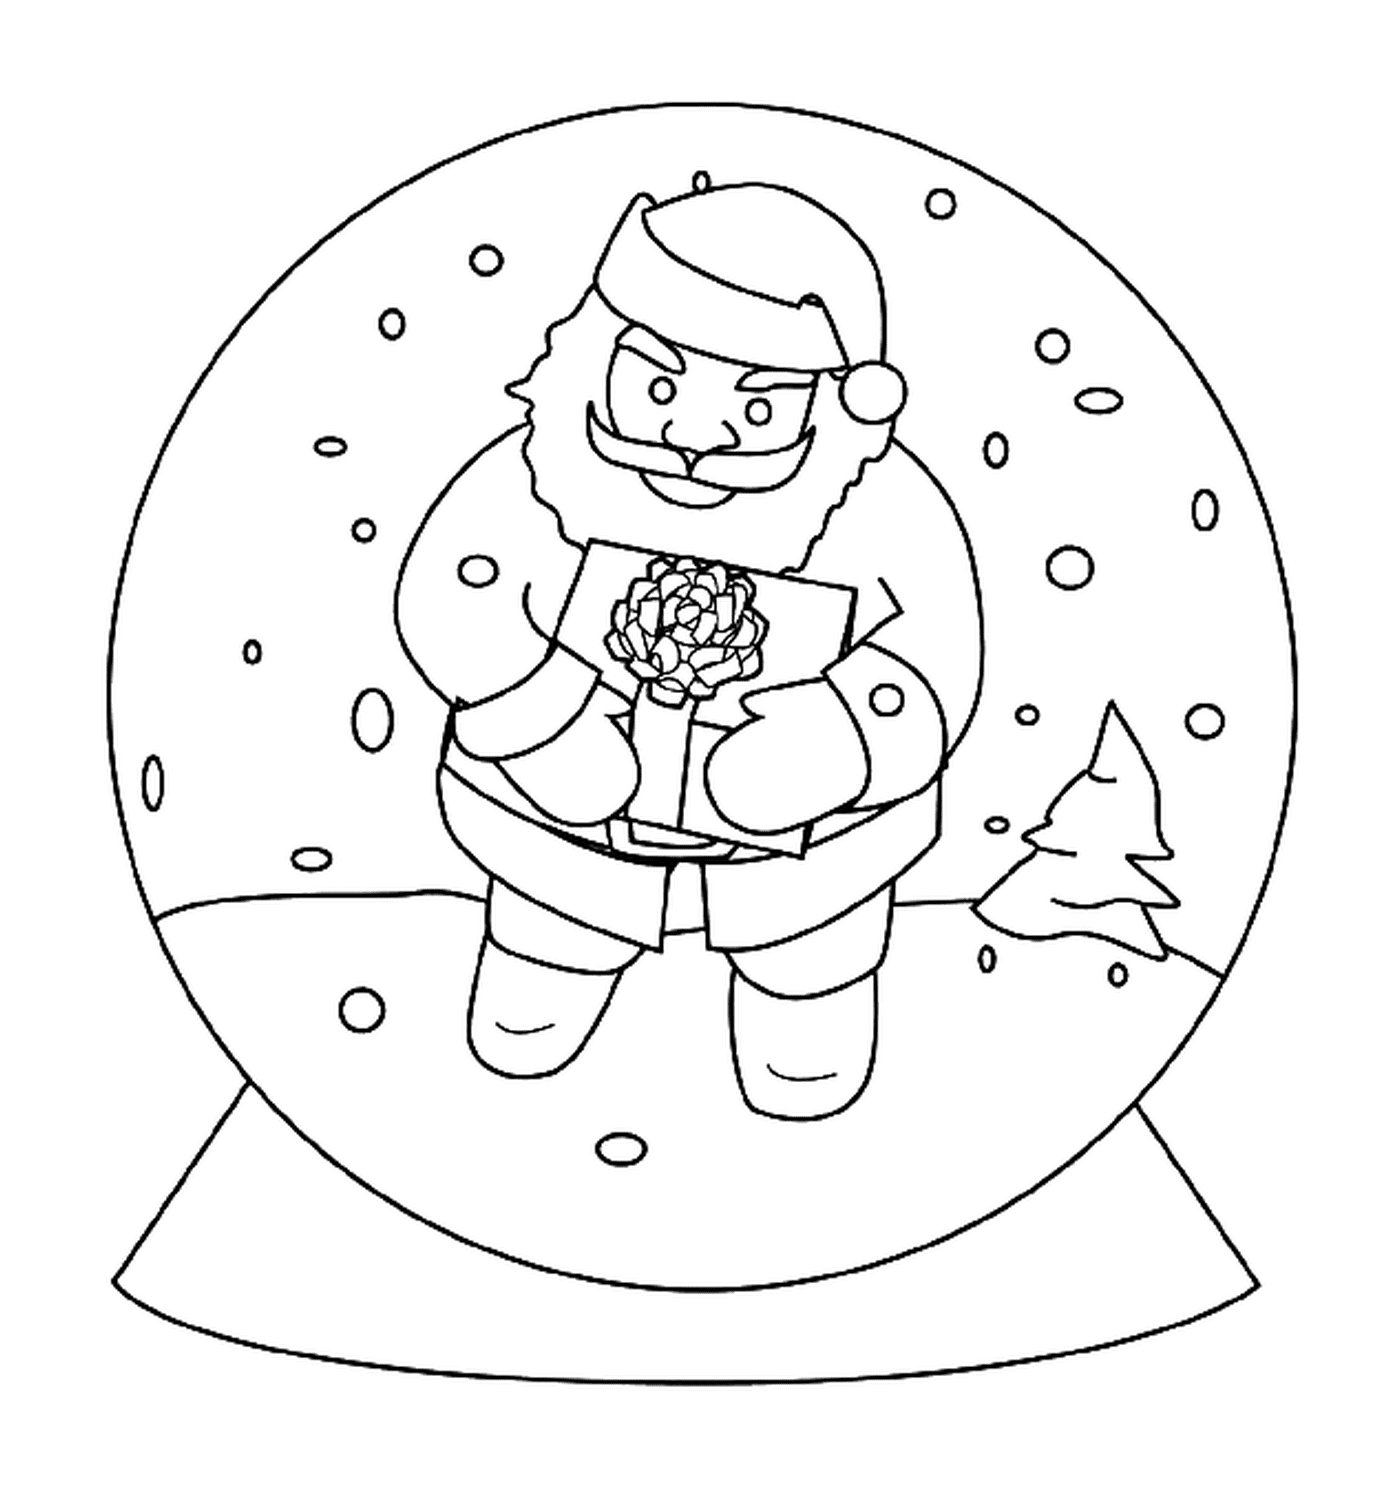  Santa en una bola de nieve 